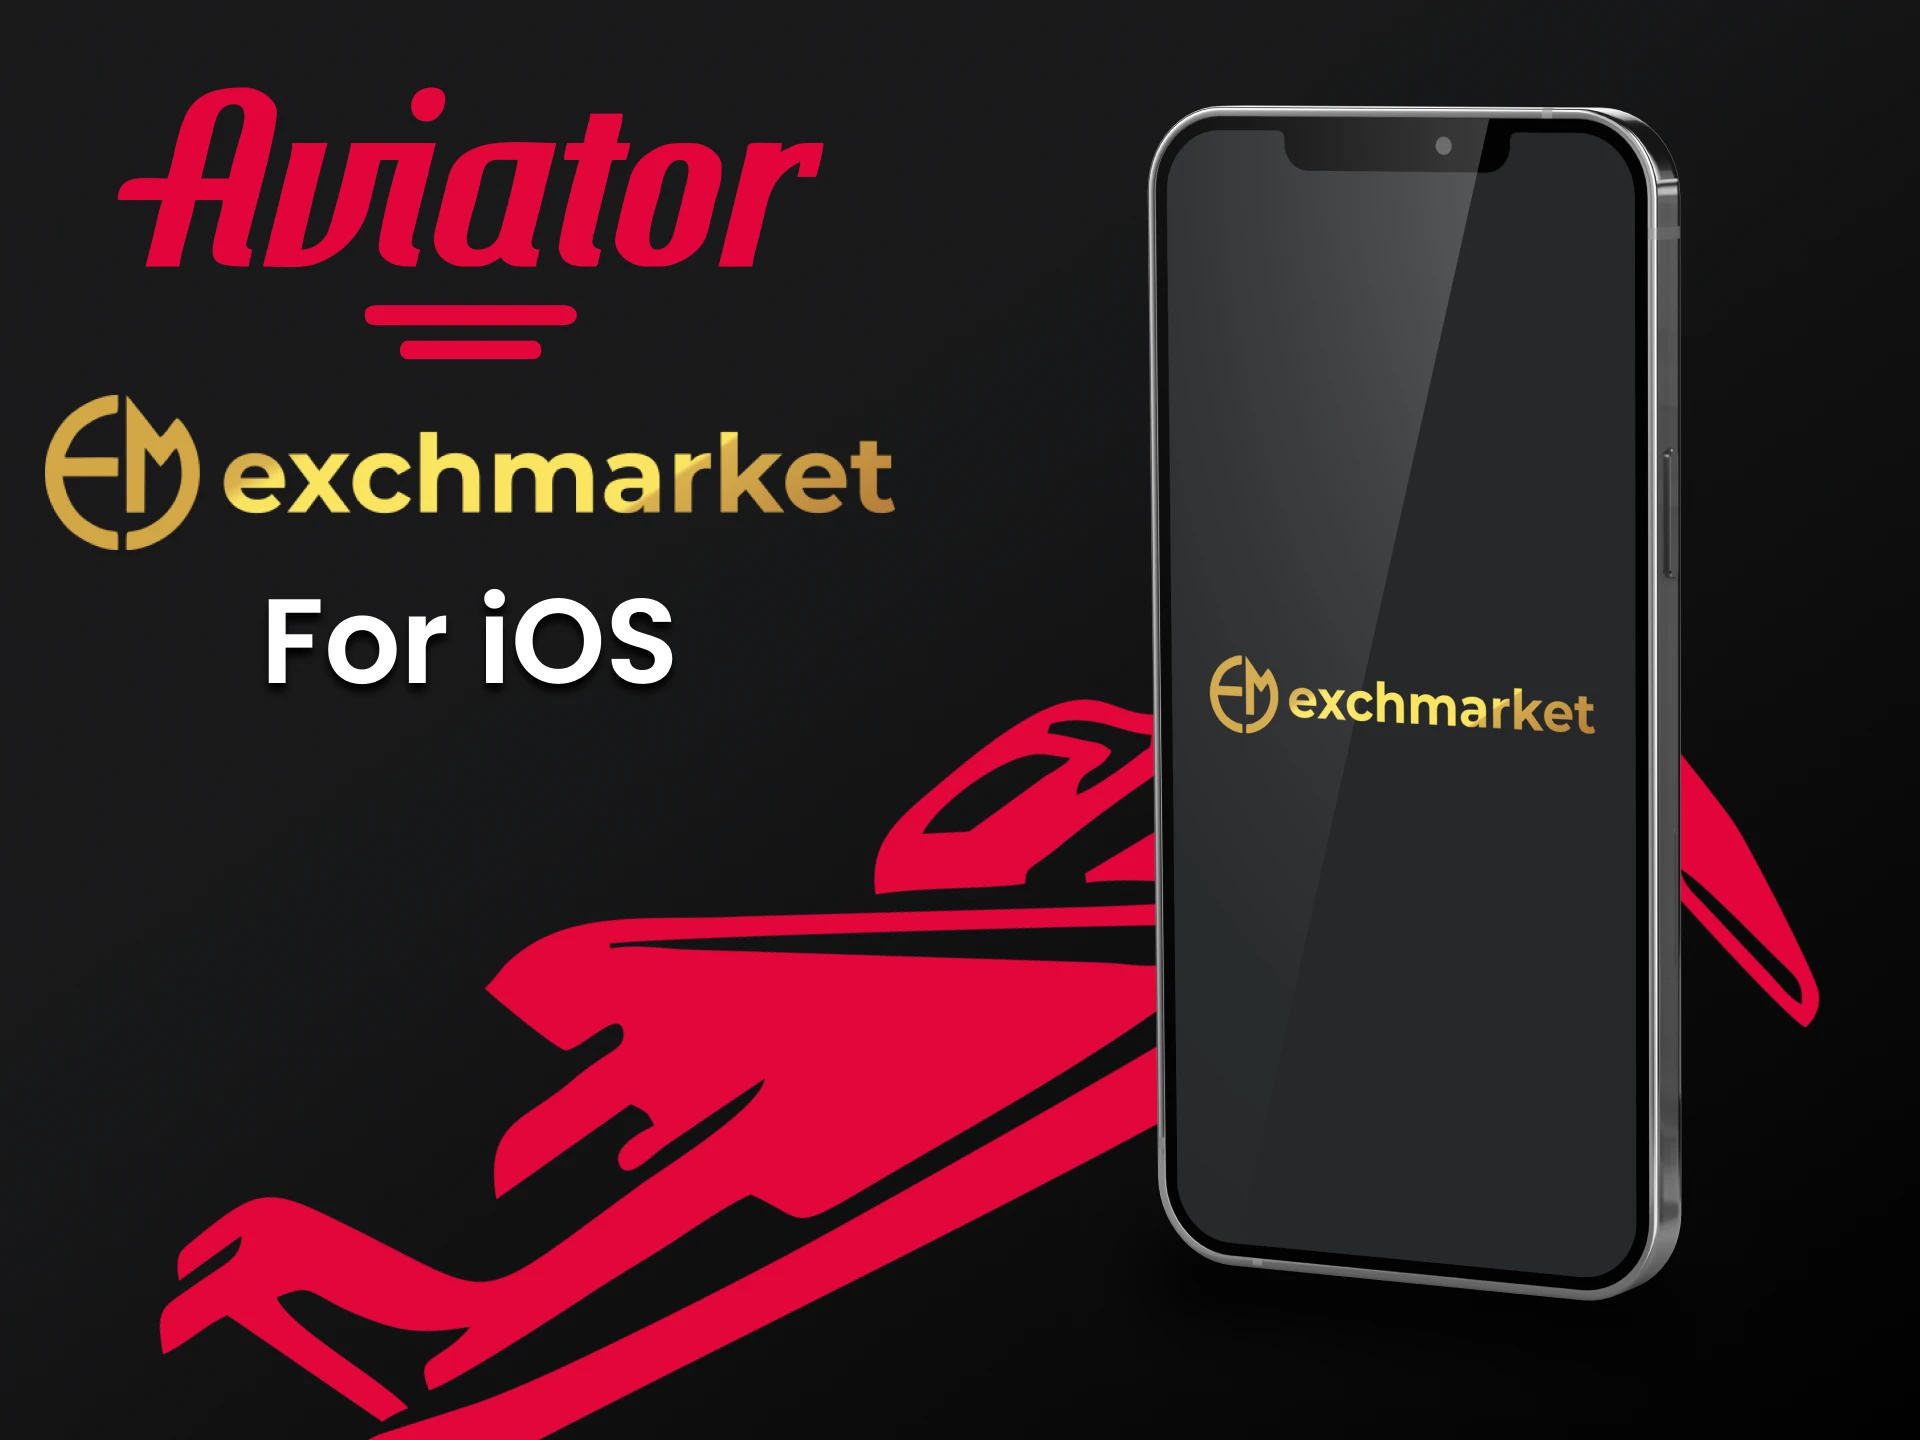 Instale o aplicativo do dispositivo Exchmarket iOS para jogar o Aviator.